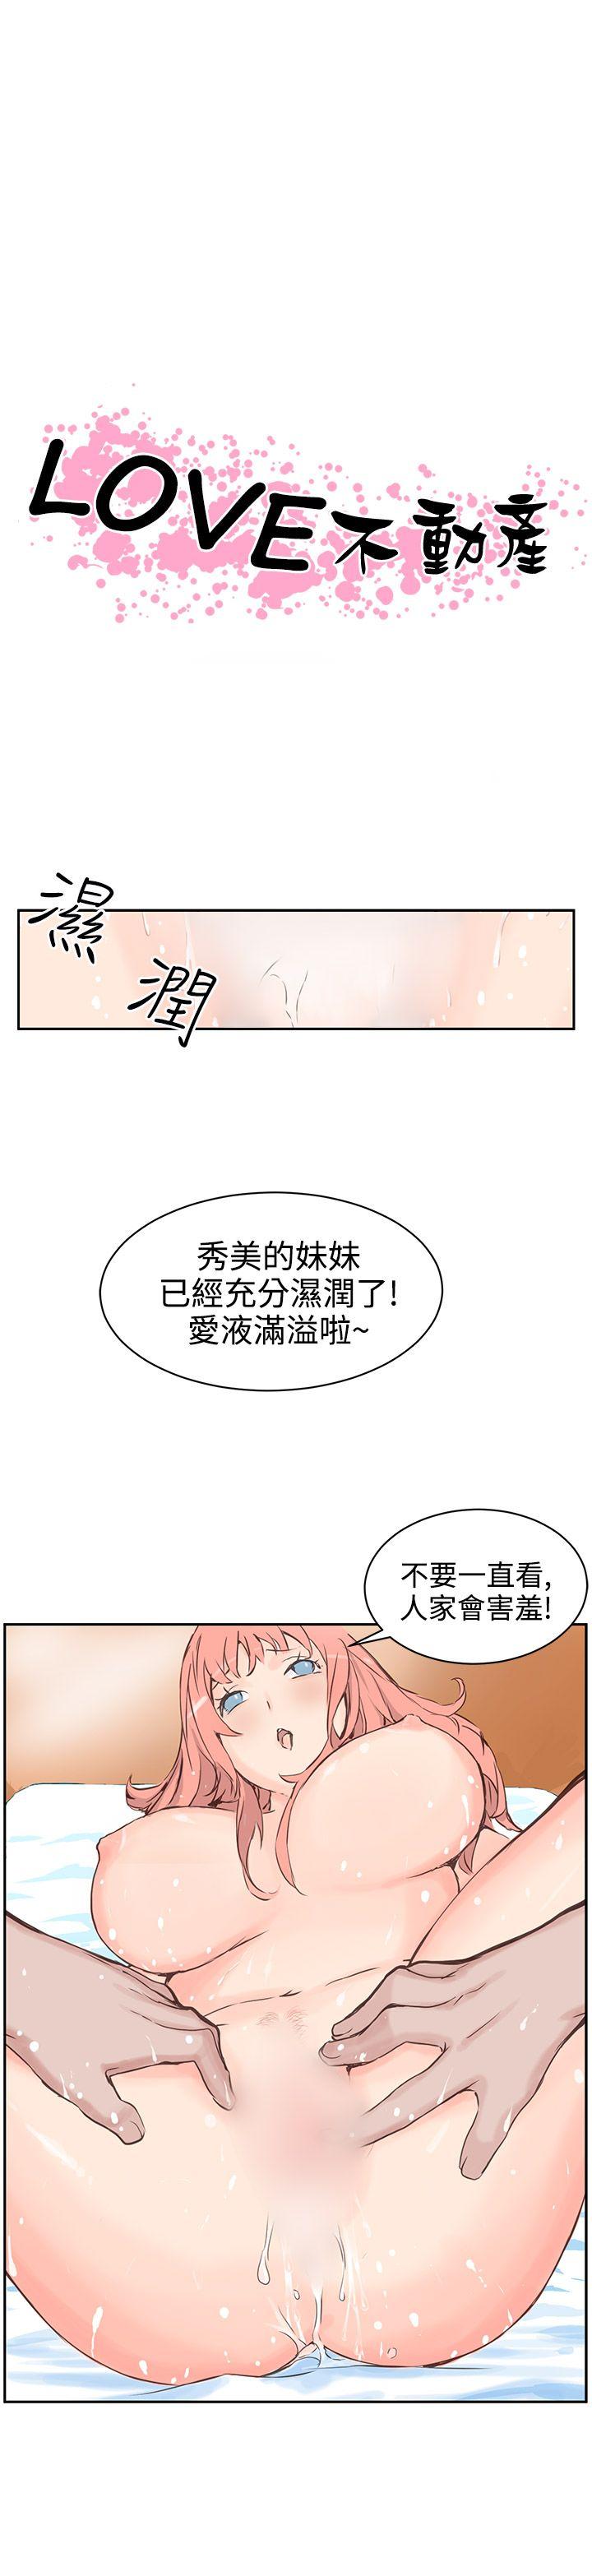 韩国污漫画 LOVE不動產 第4话 1